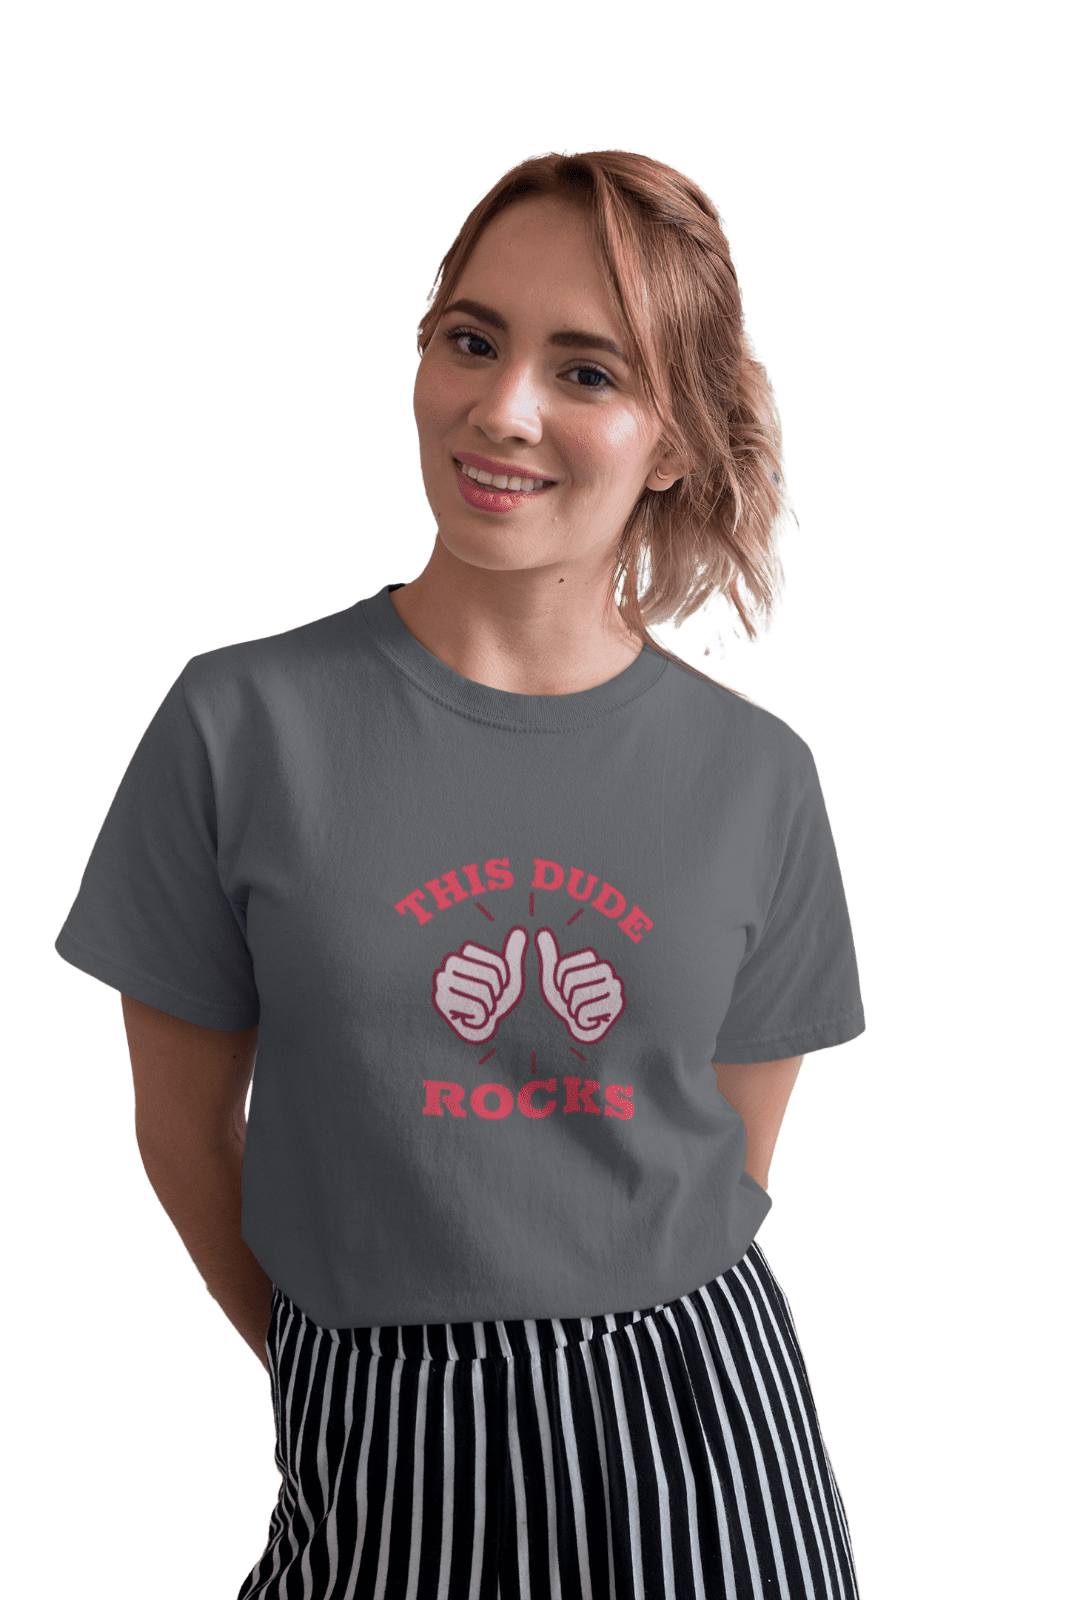 The Rock Meme T-Shirt plain T-Shirt short oversized t shirt Short t-shirt  clothes for men - AliExpress